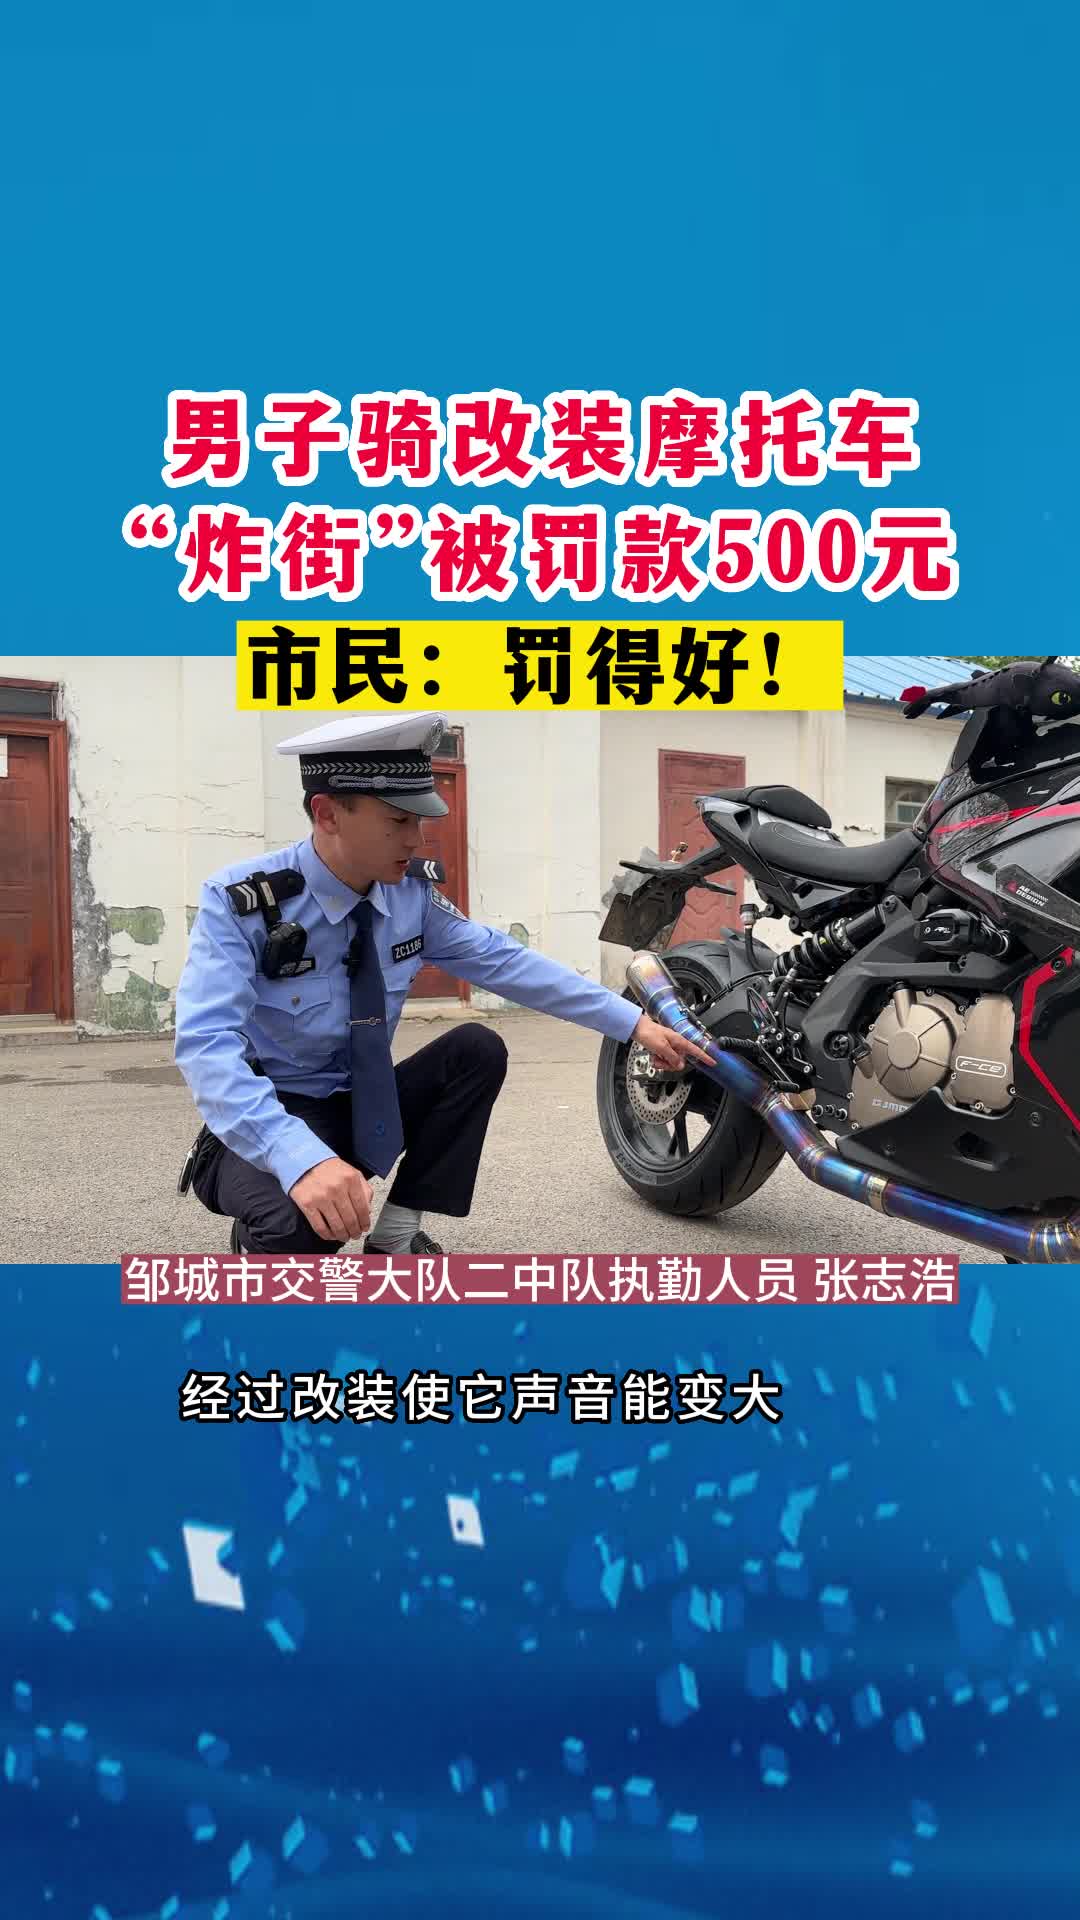 【邹视频·邹鲁民生】32秒|男子骑改装摩托车 “炸街”被罚500元